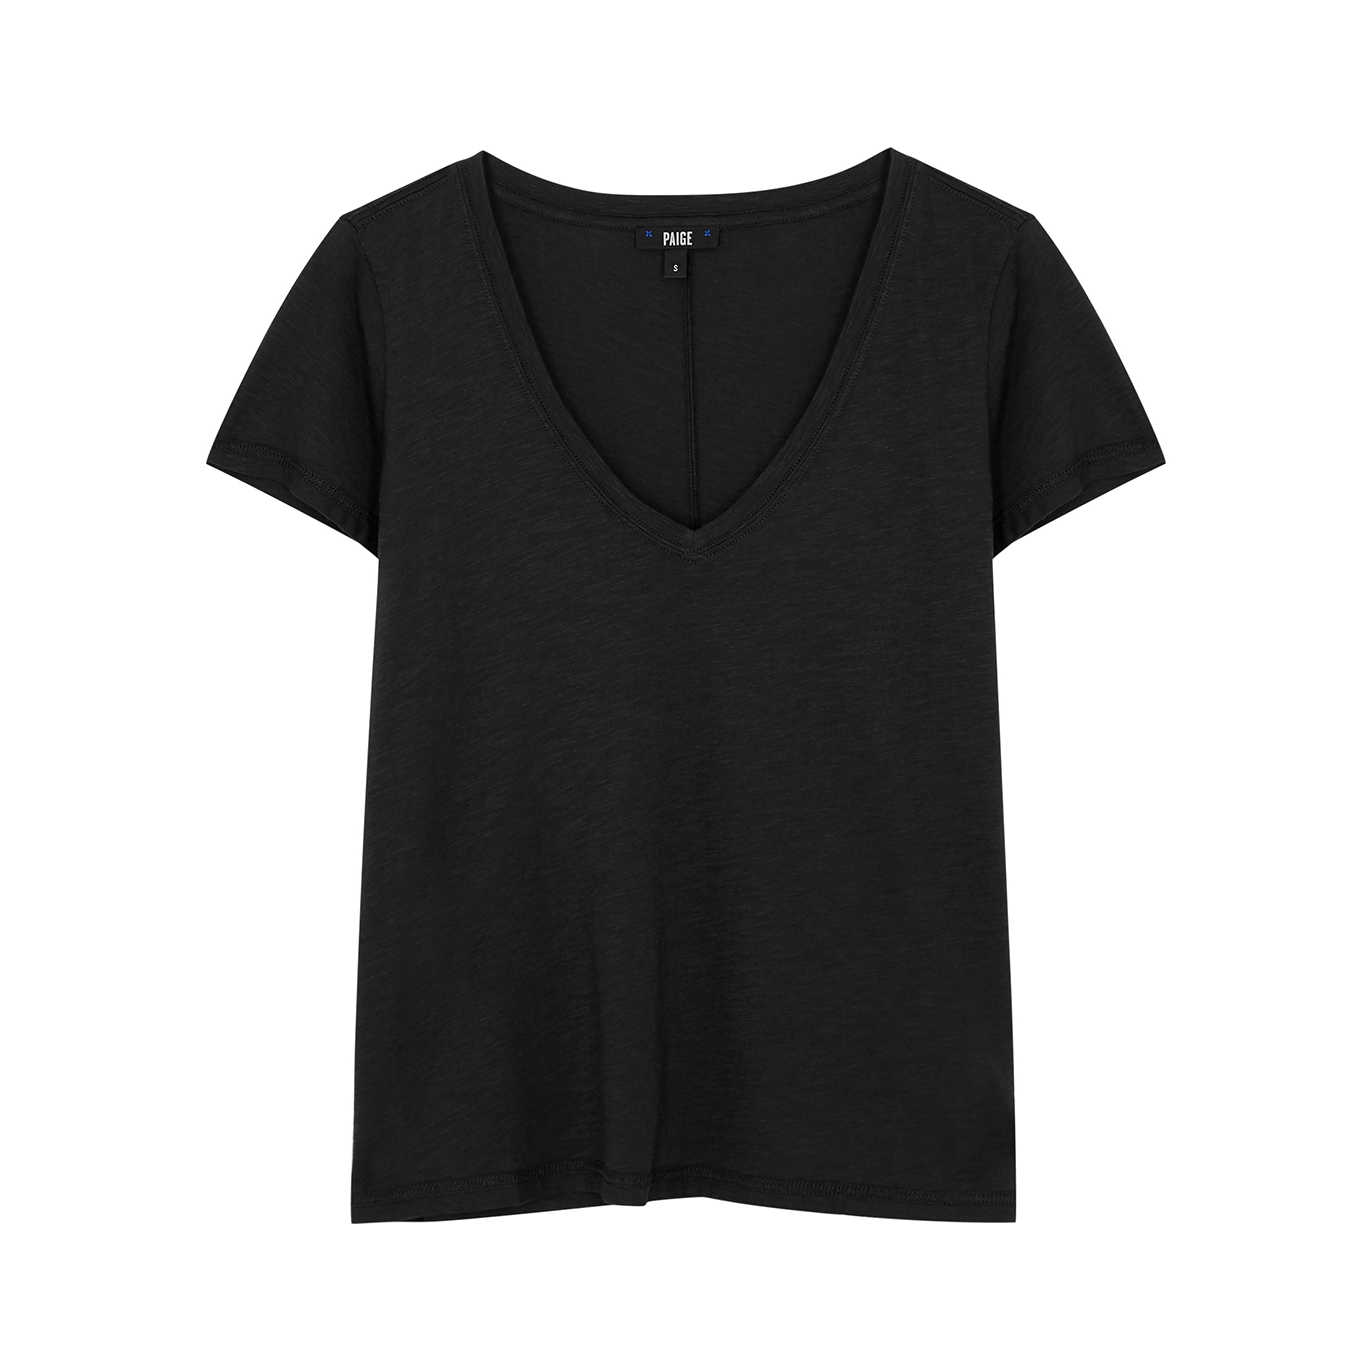 Paige Zaya Black Jersey T-shirt - M